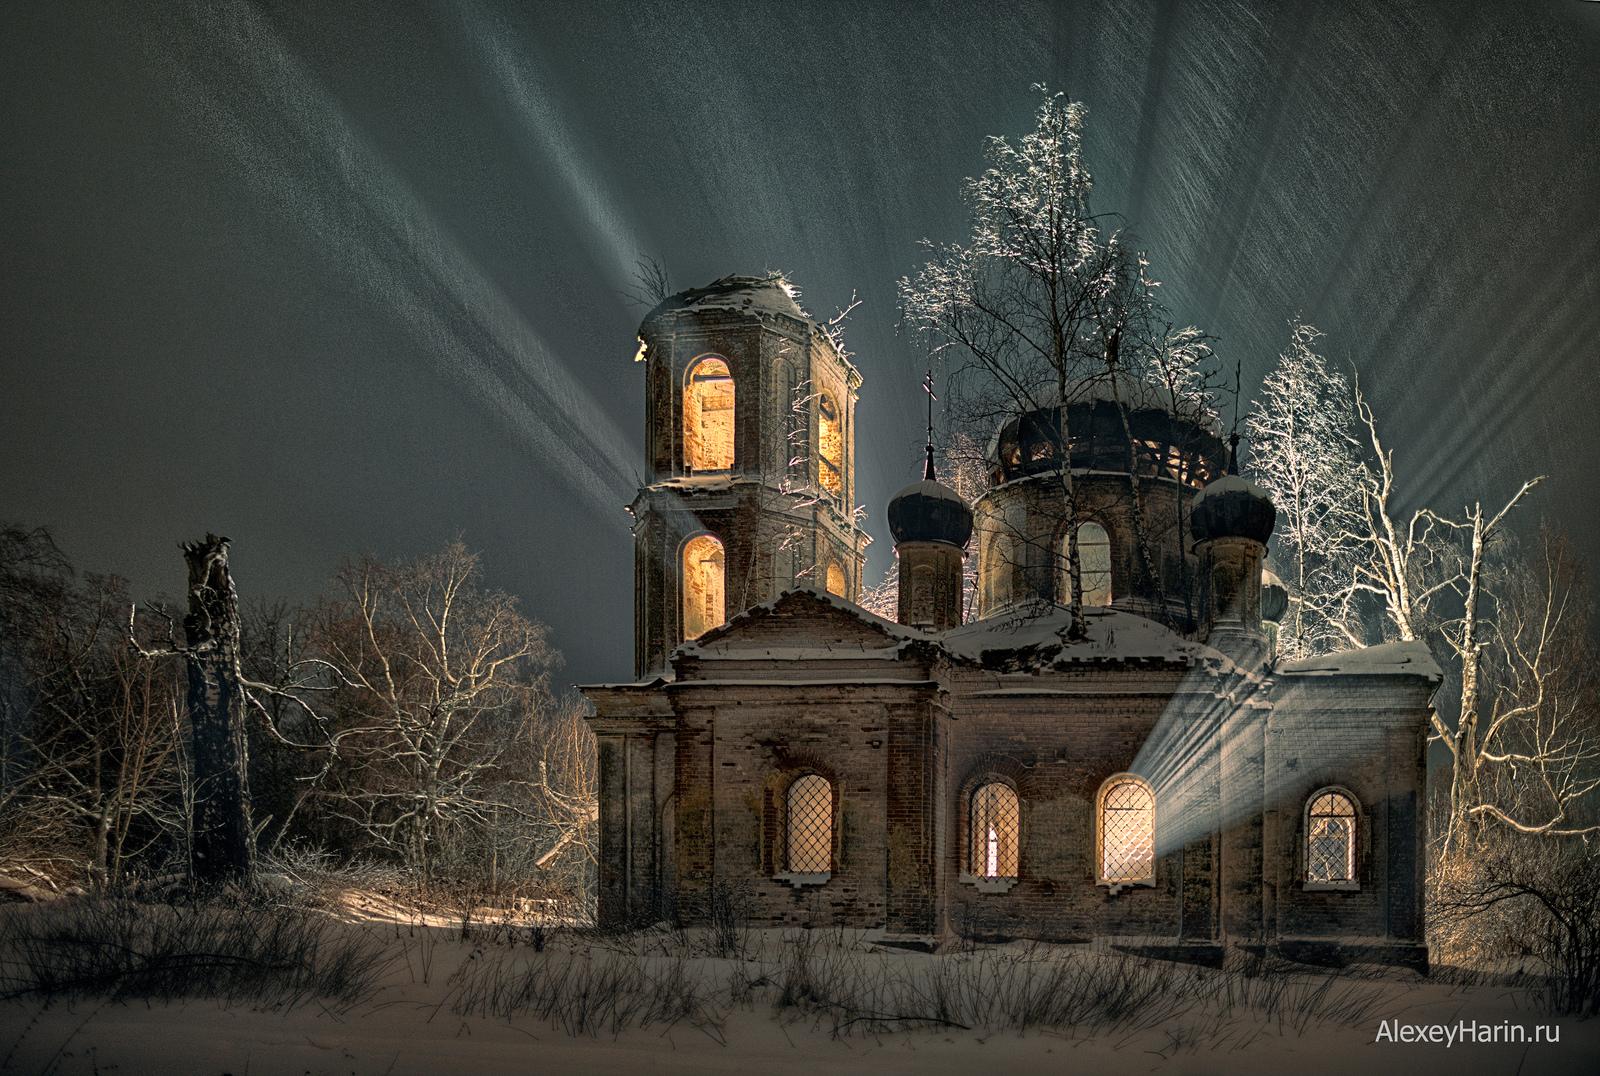 Деревенский православный храм зимой, Россия - Железнов Леонид